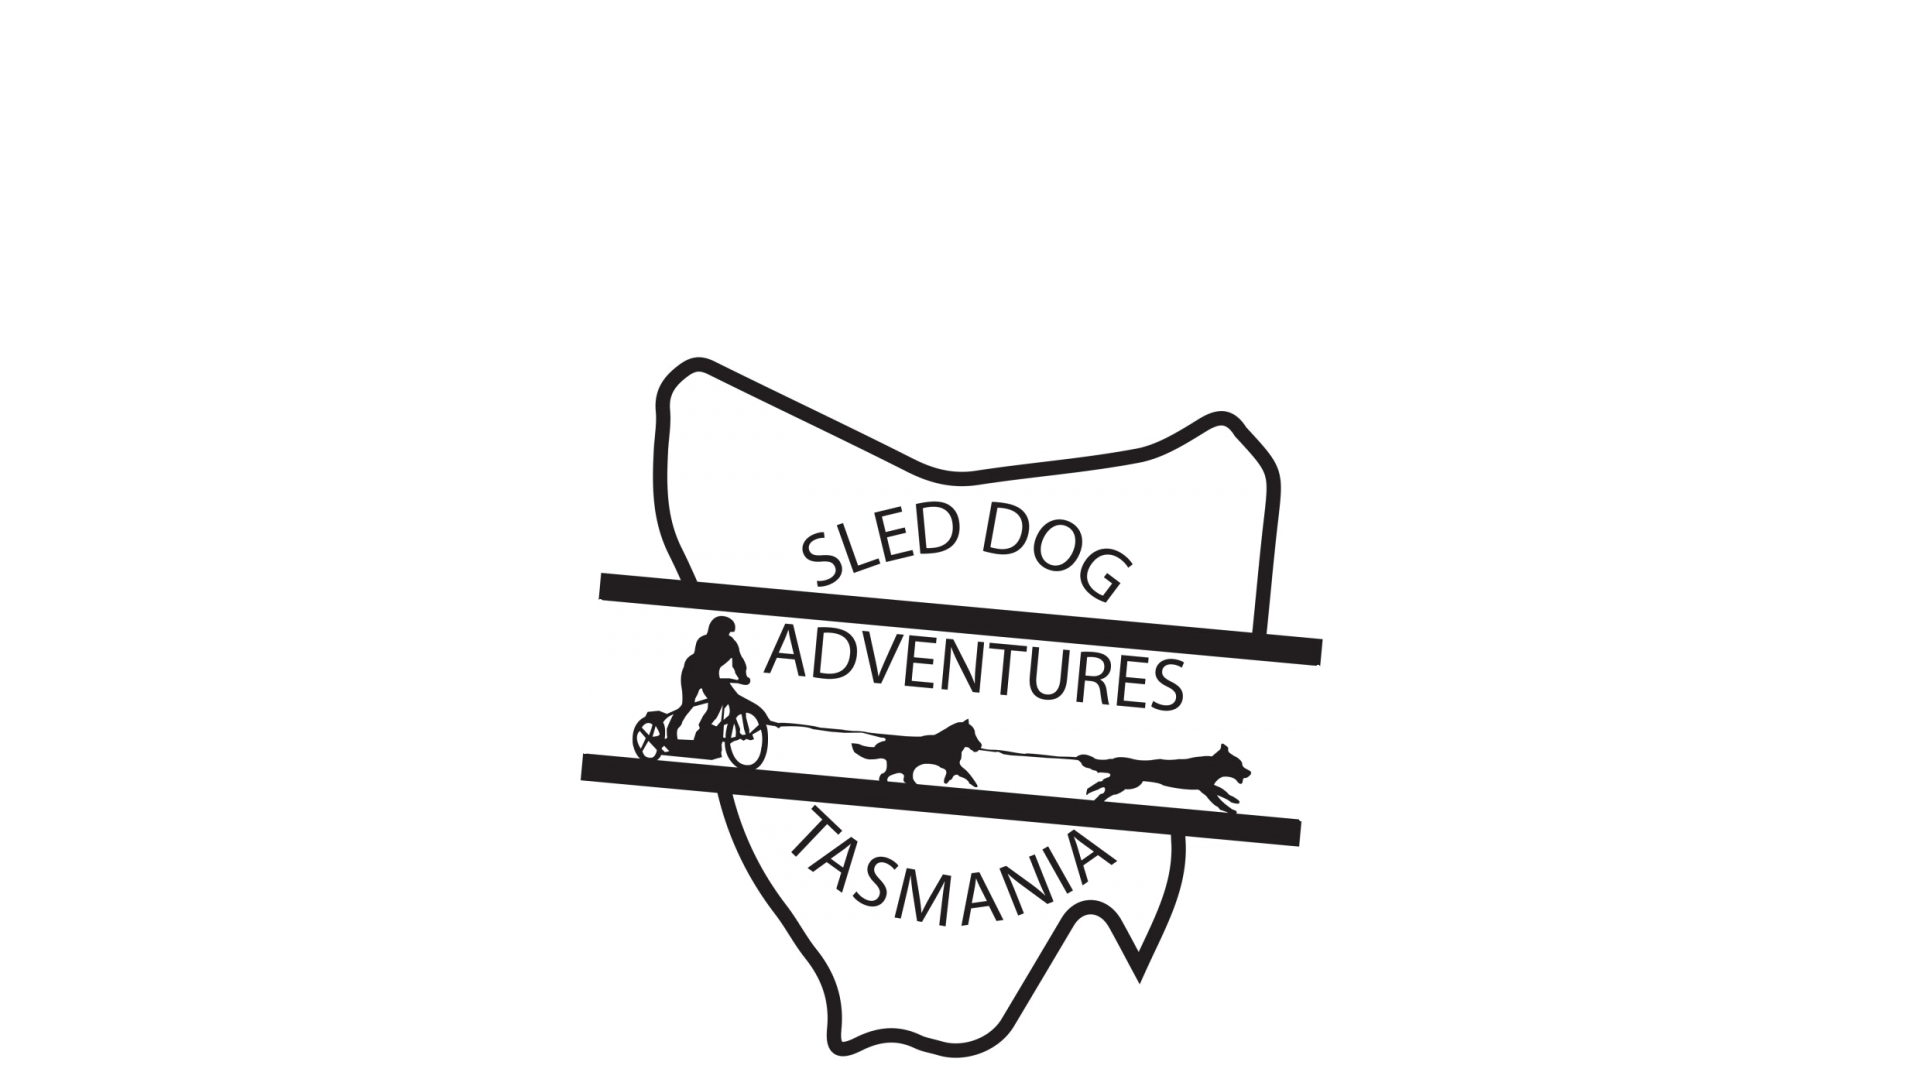 Sled Dog Adventures Tasmania